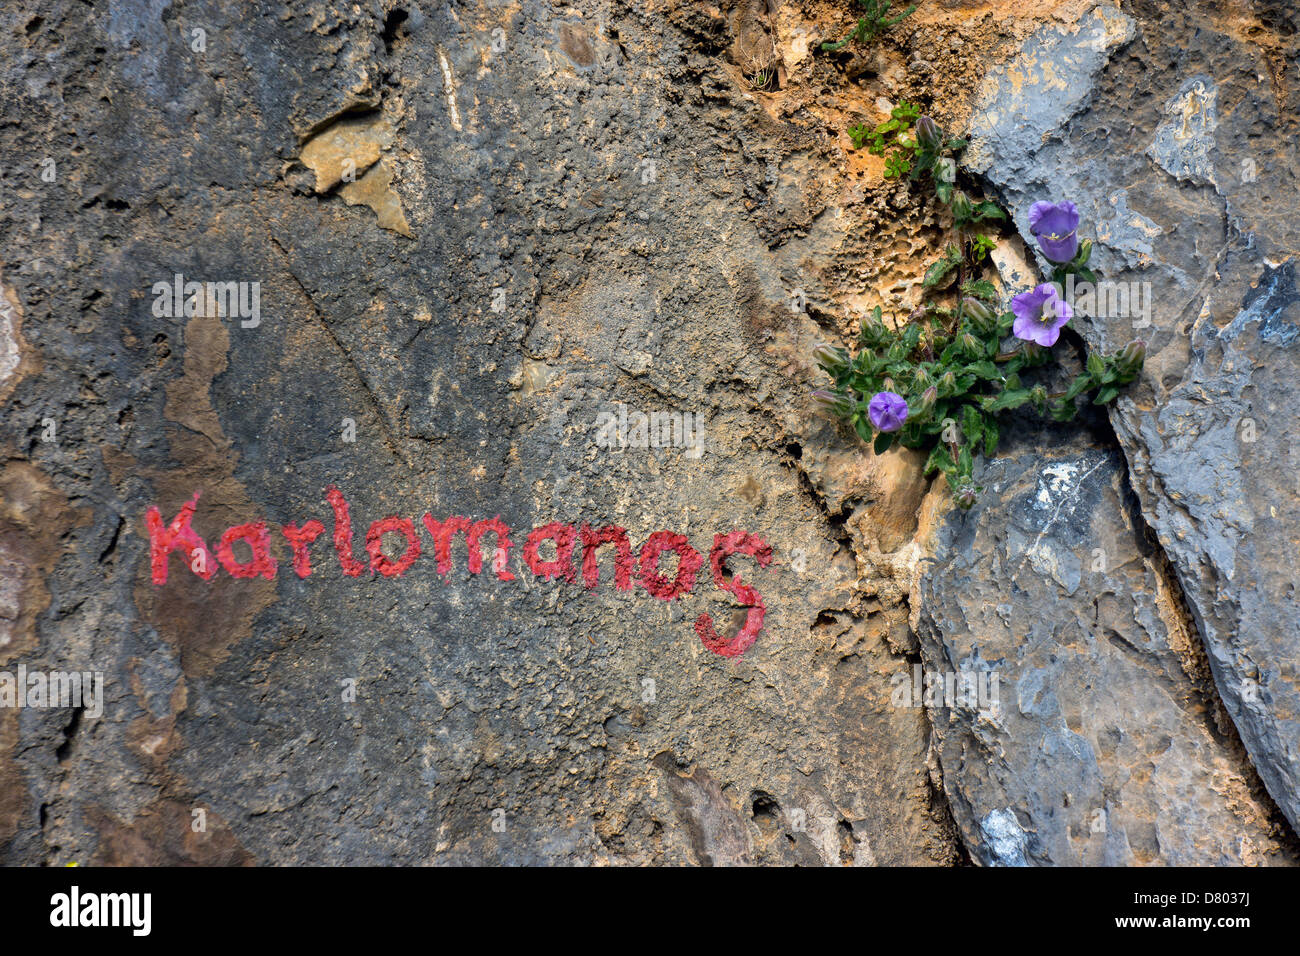 Bemalte Name der Felsen klettern auf Felsen mit blauen Blüten Stockfoto